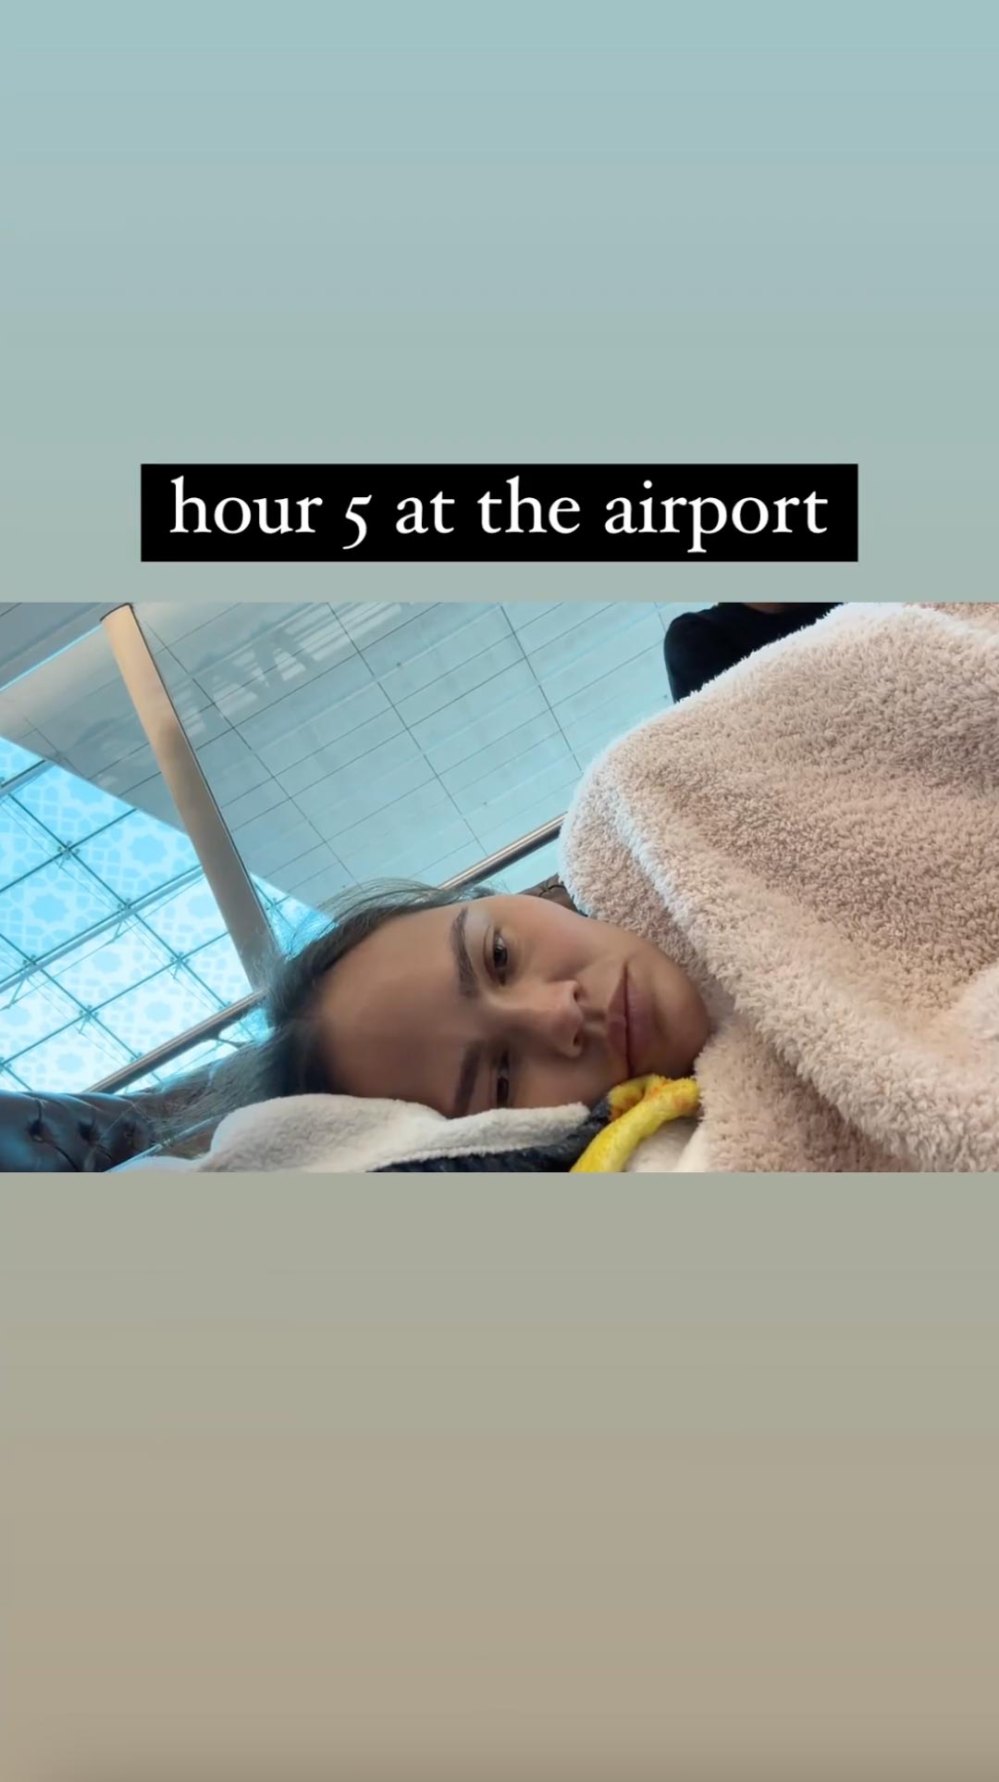 Chrissy Teigen Sleeps on Dubai Airport Floor With Family